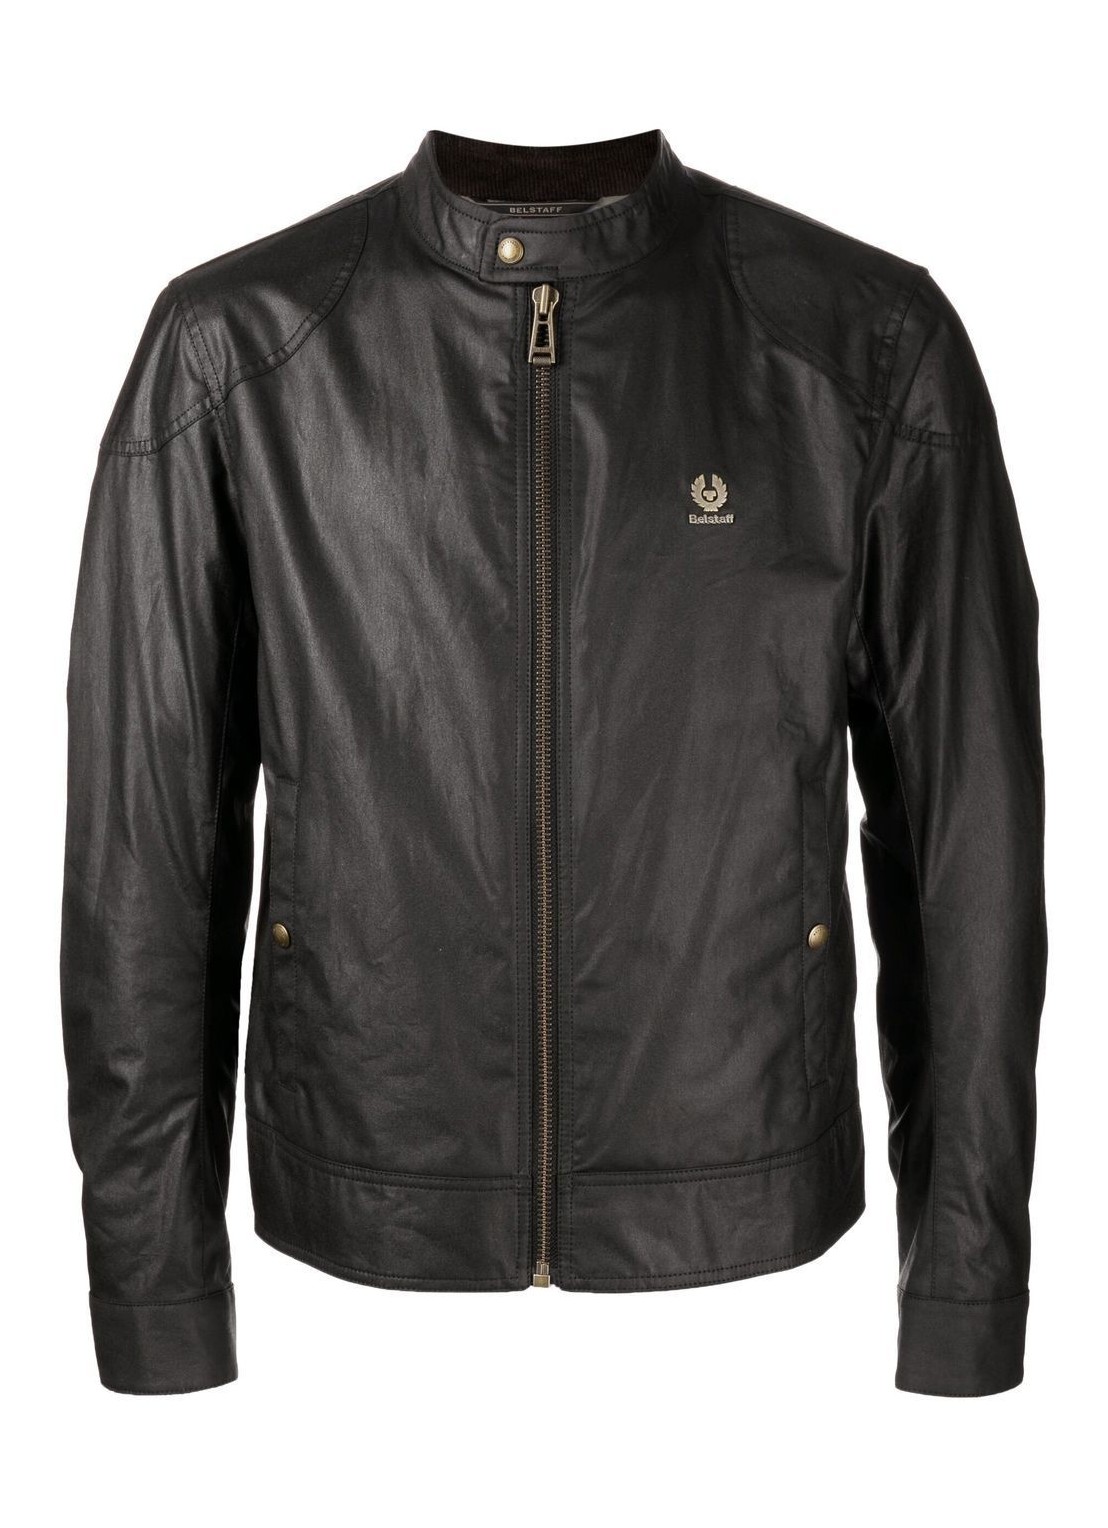 Outerwear belstaff kelland jacket - 100468 black talla 50
 